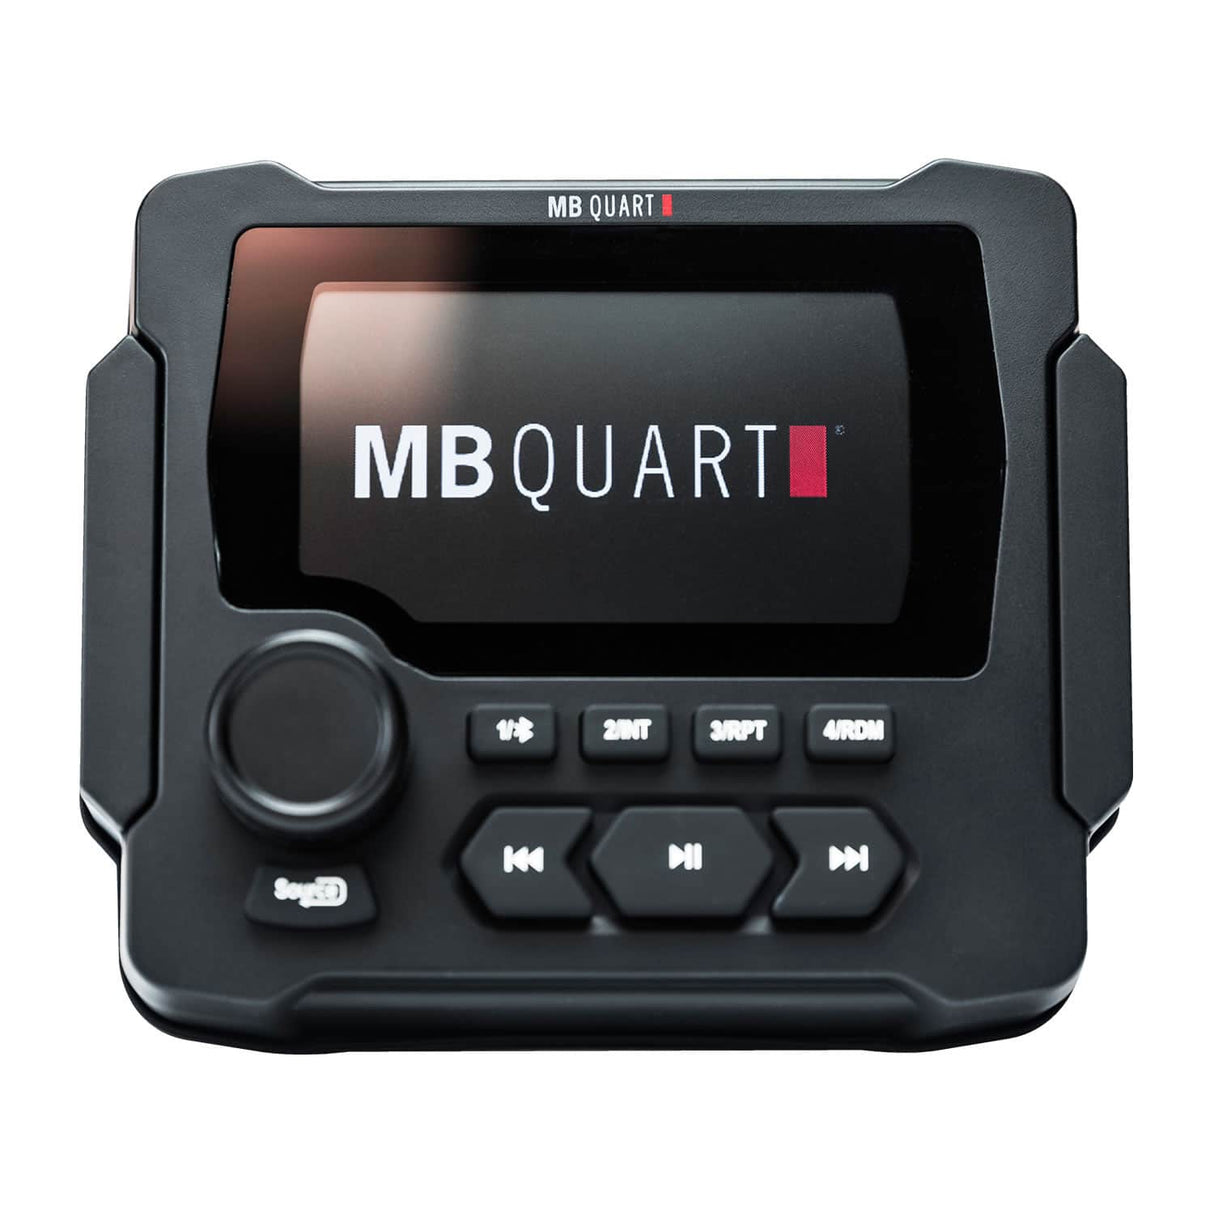 MB Quart GMR-LED Nautic 160 Watt Powered Source Unit